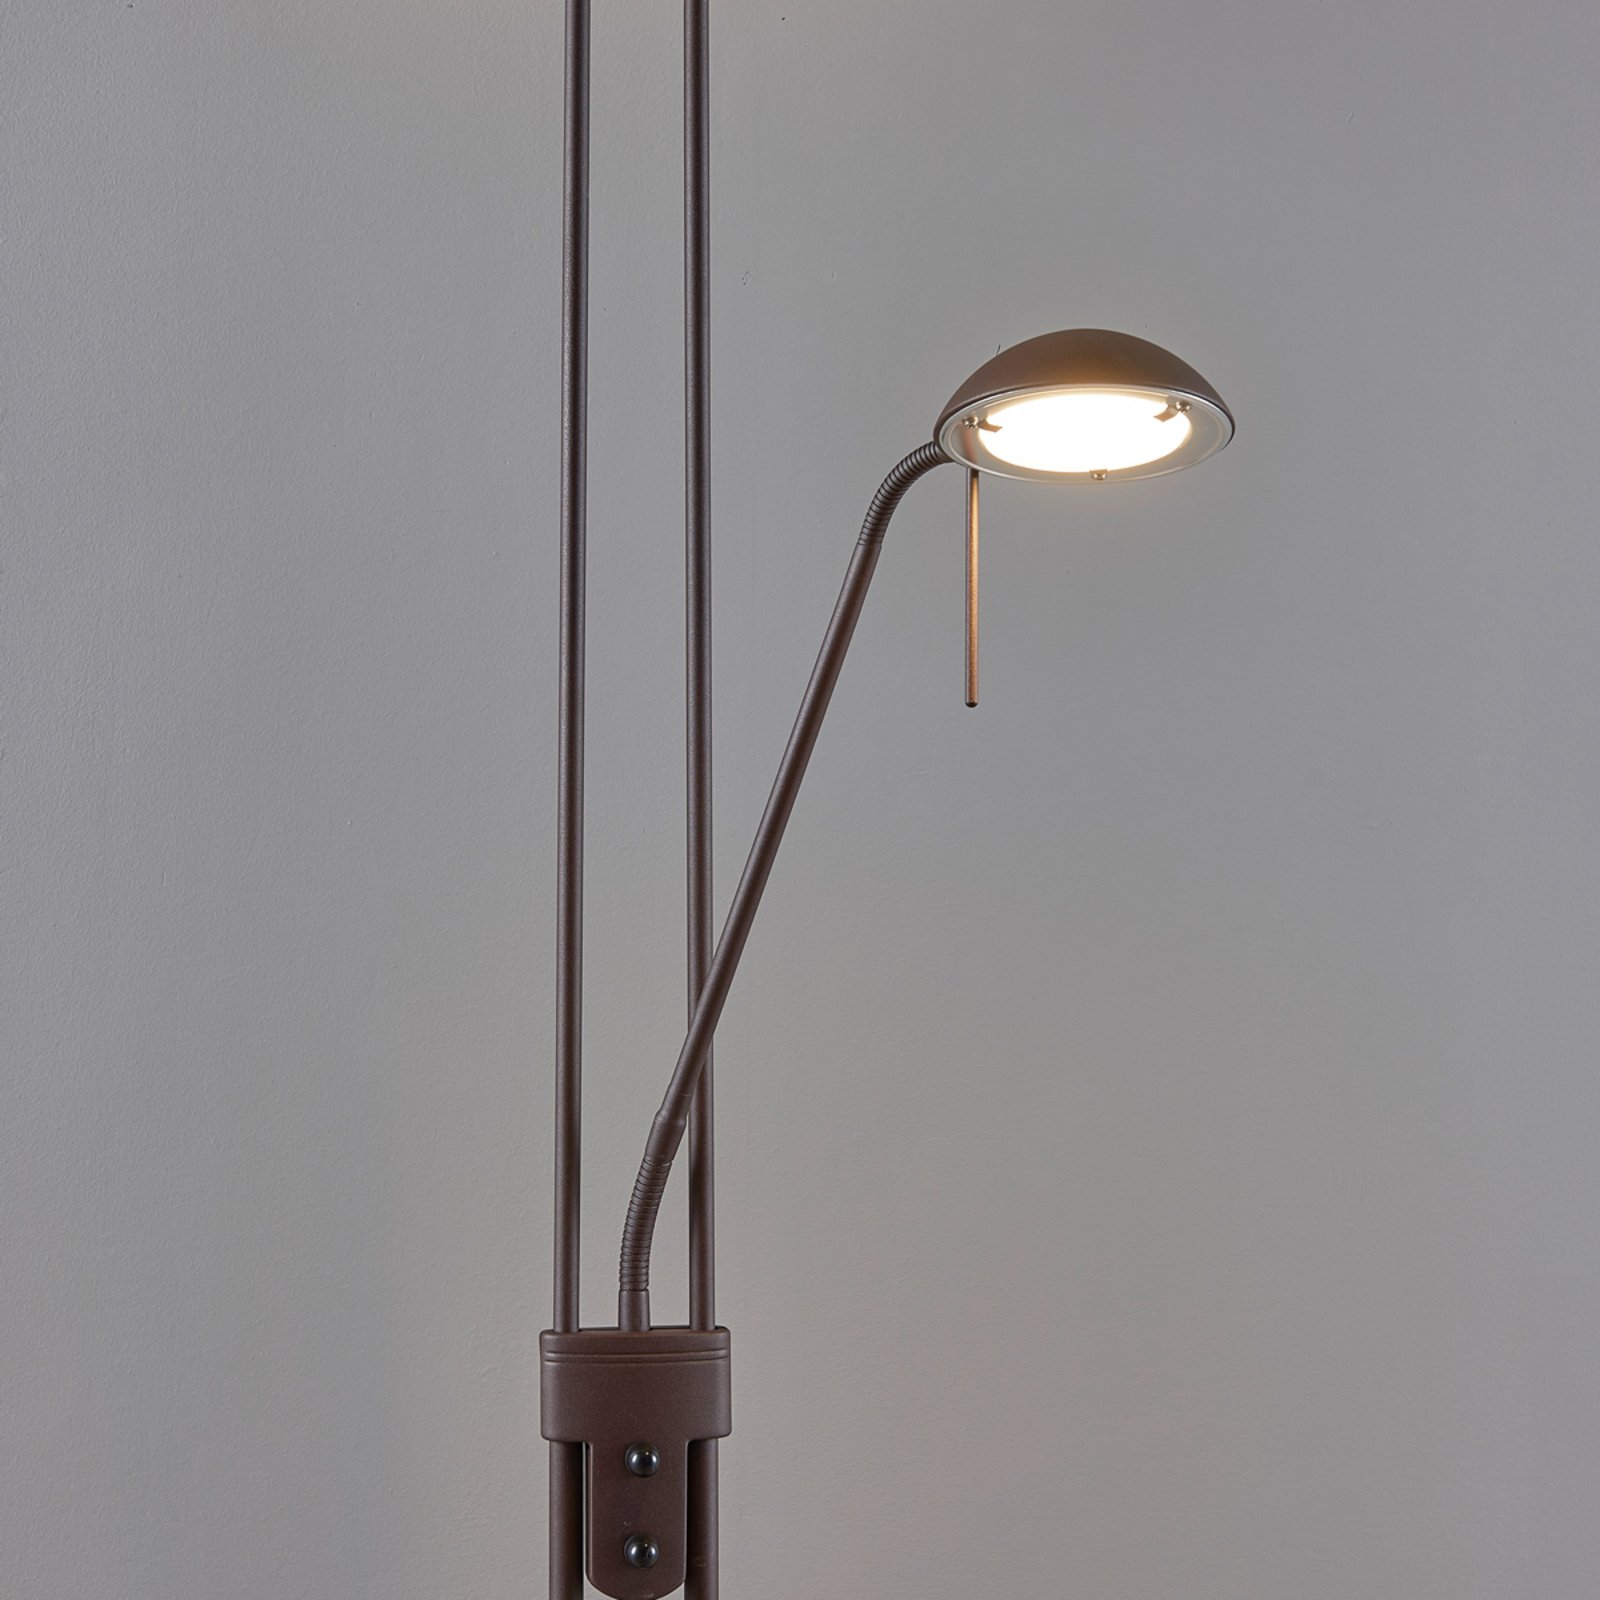 Yveta rust-coloured LED uplighter floor lamp witha  dimmer